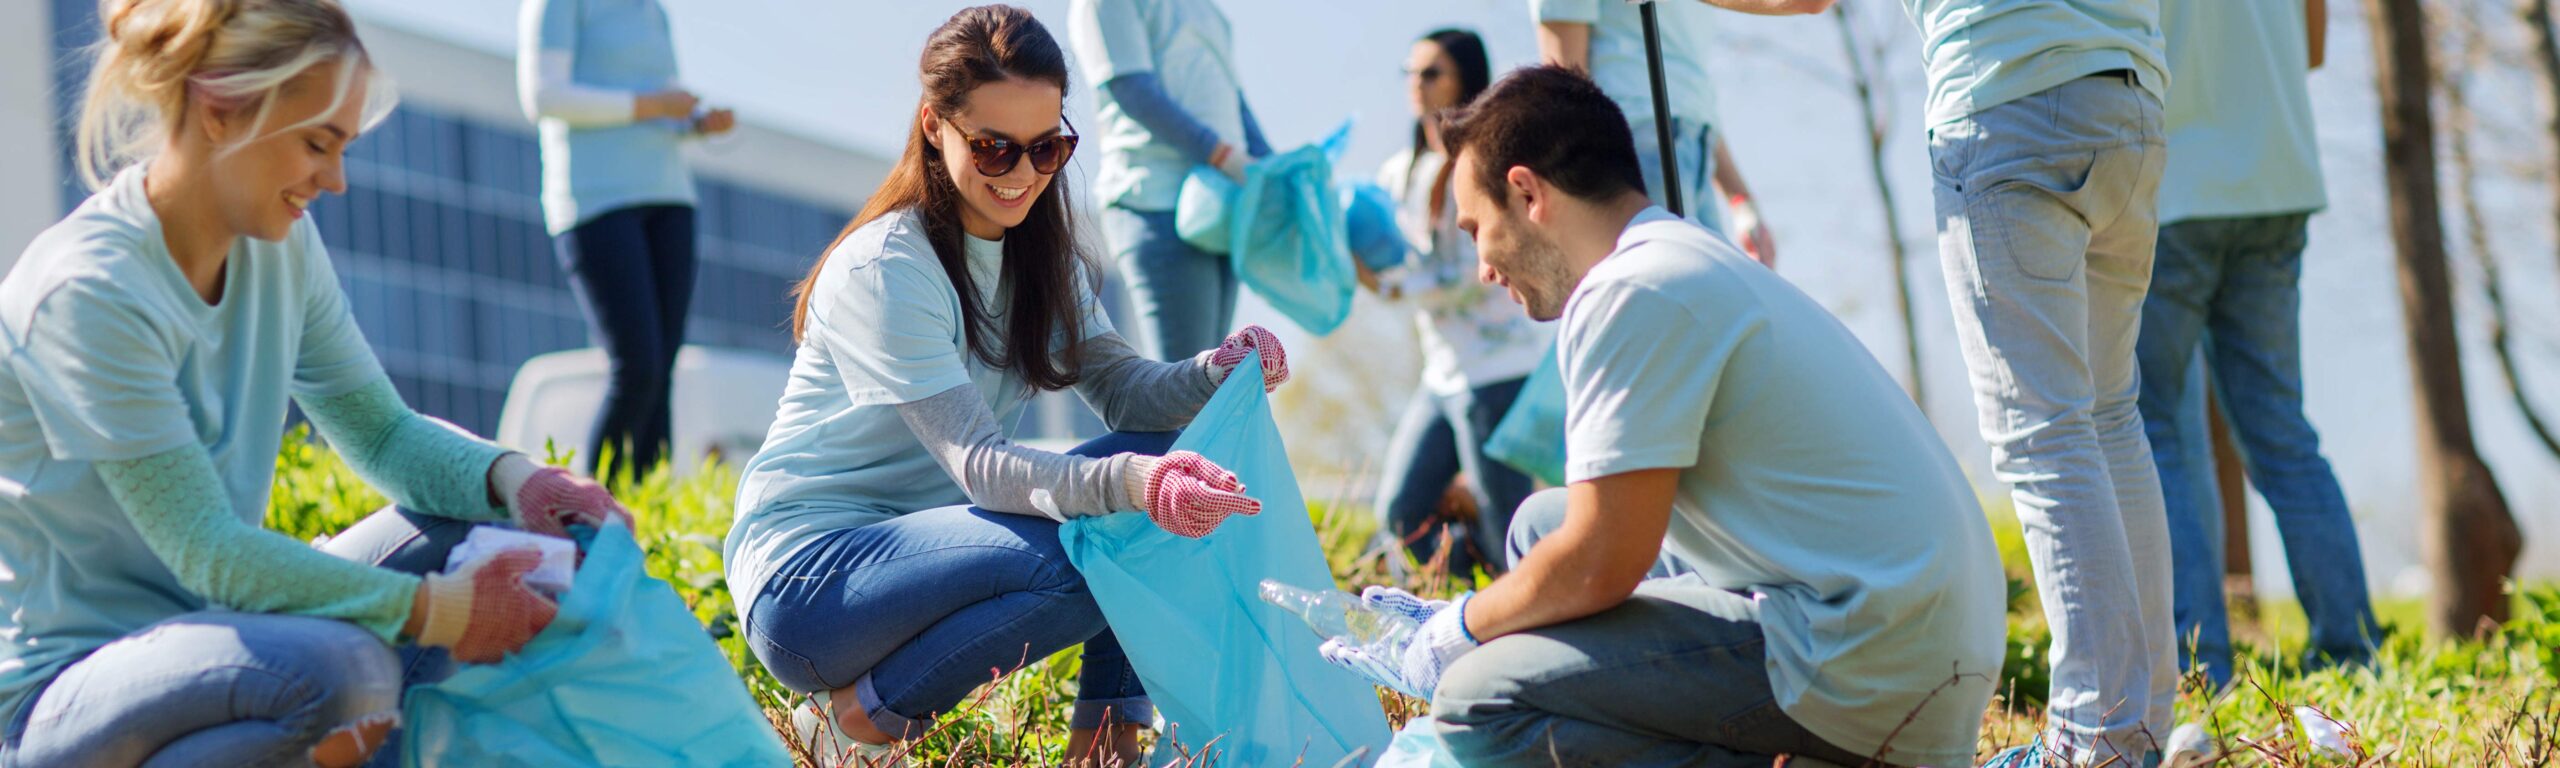 Volunteers cleaning up trash.